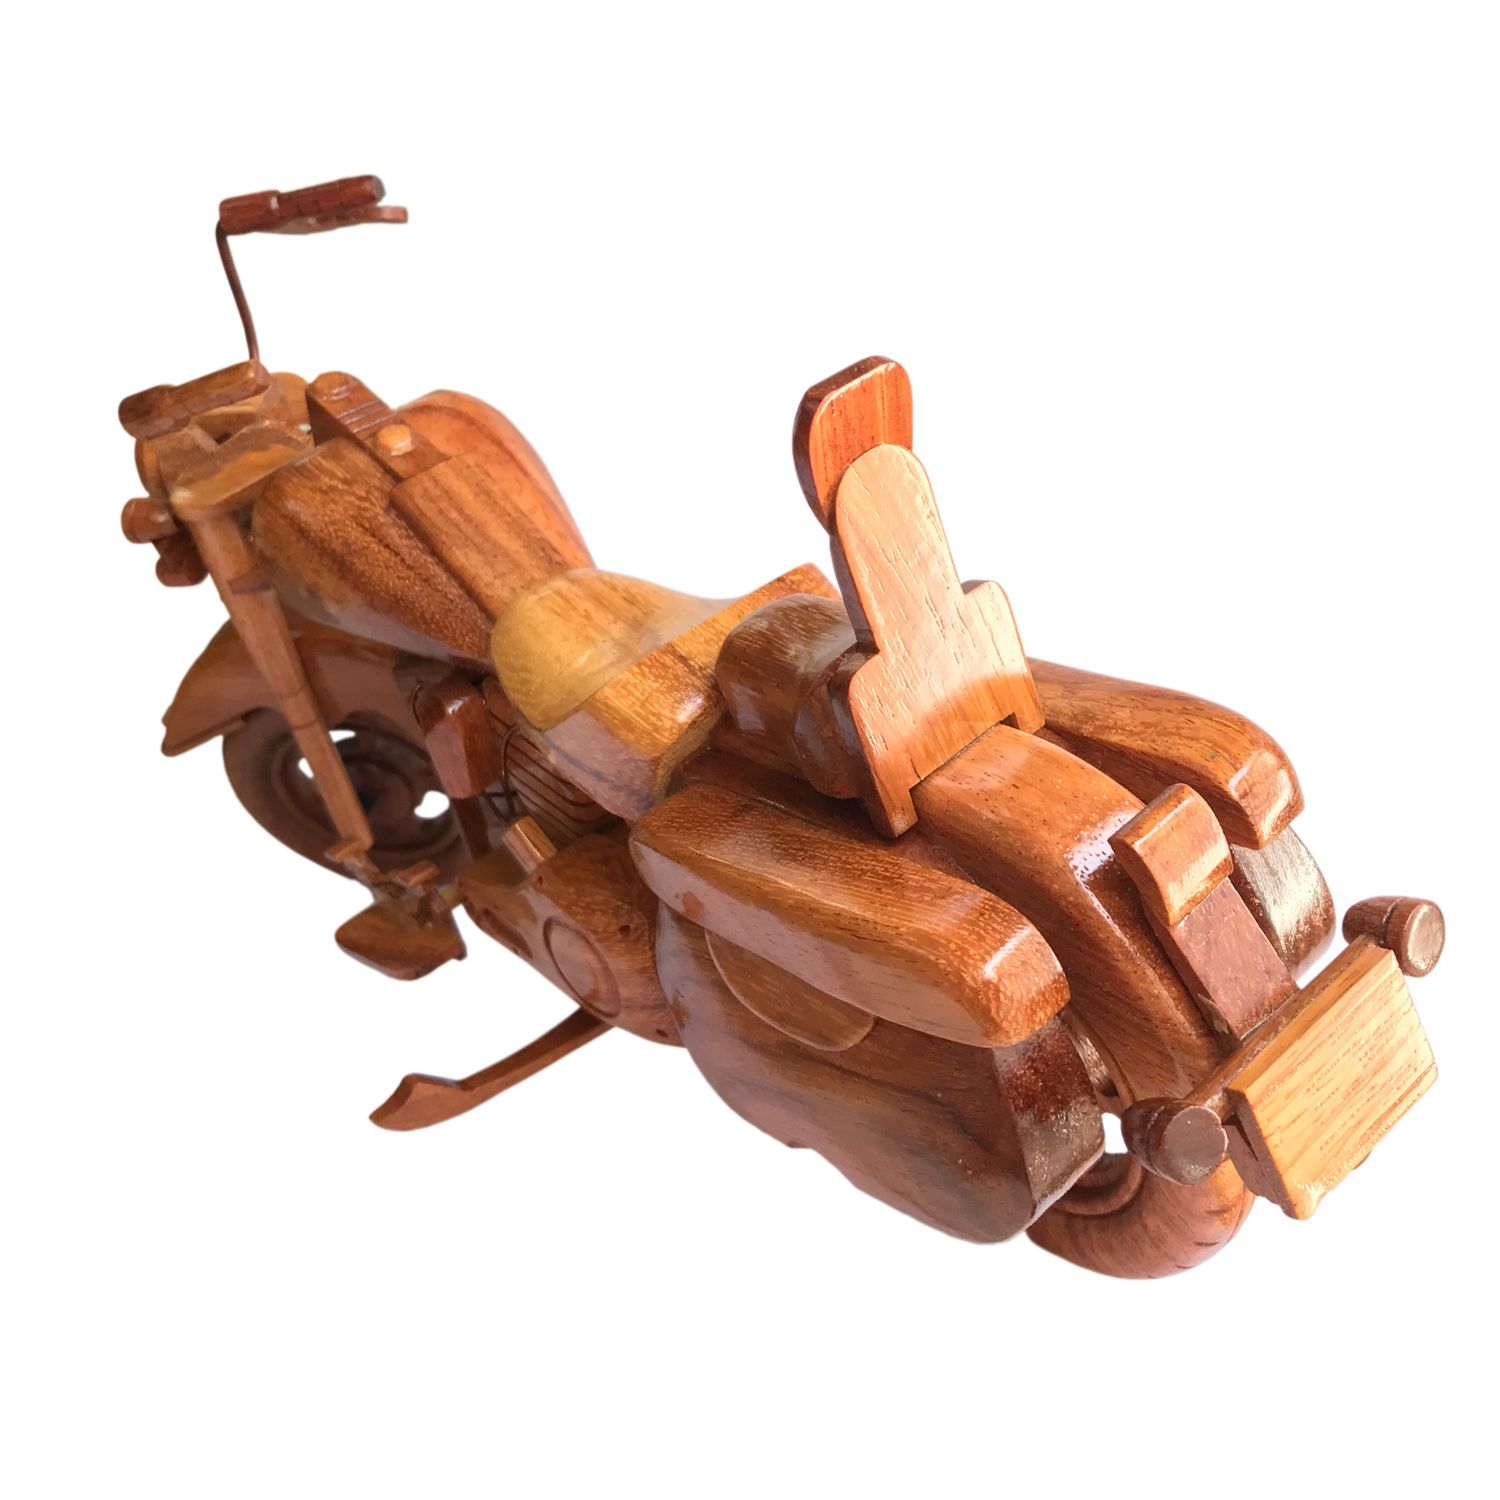 Mô hình xe gỗ